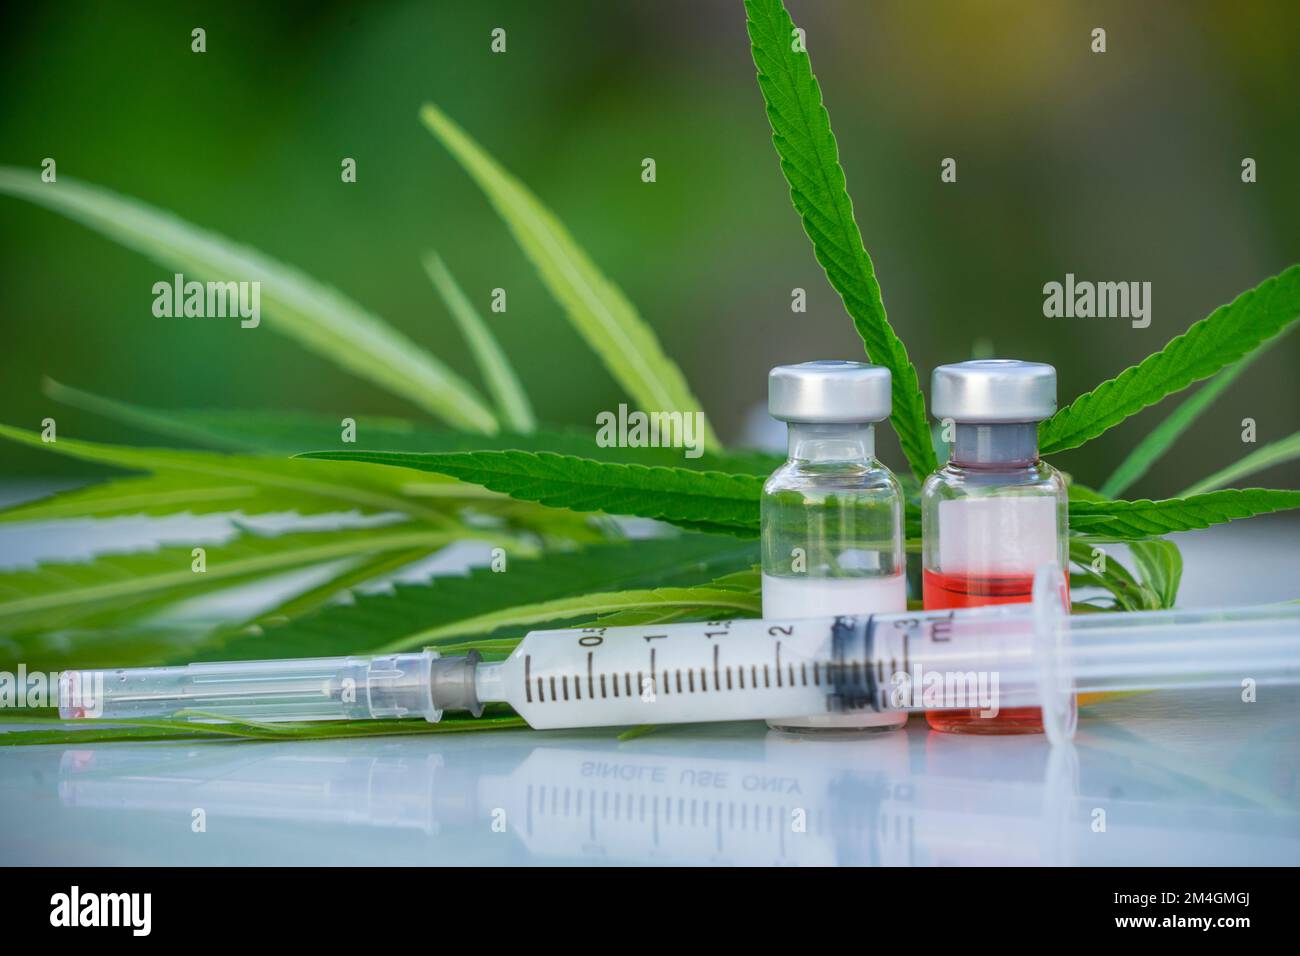 Plastikspritze mit Nadel und grünen Hanfblättern und Medizin in der Flasche Cannabis-Rezept für den persönlichen Gebrauch, legale leichte Medikamente verschreiben. Stockfoto